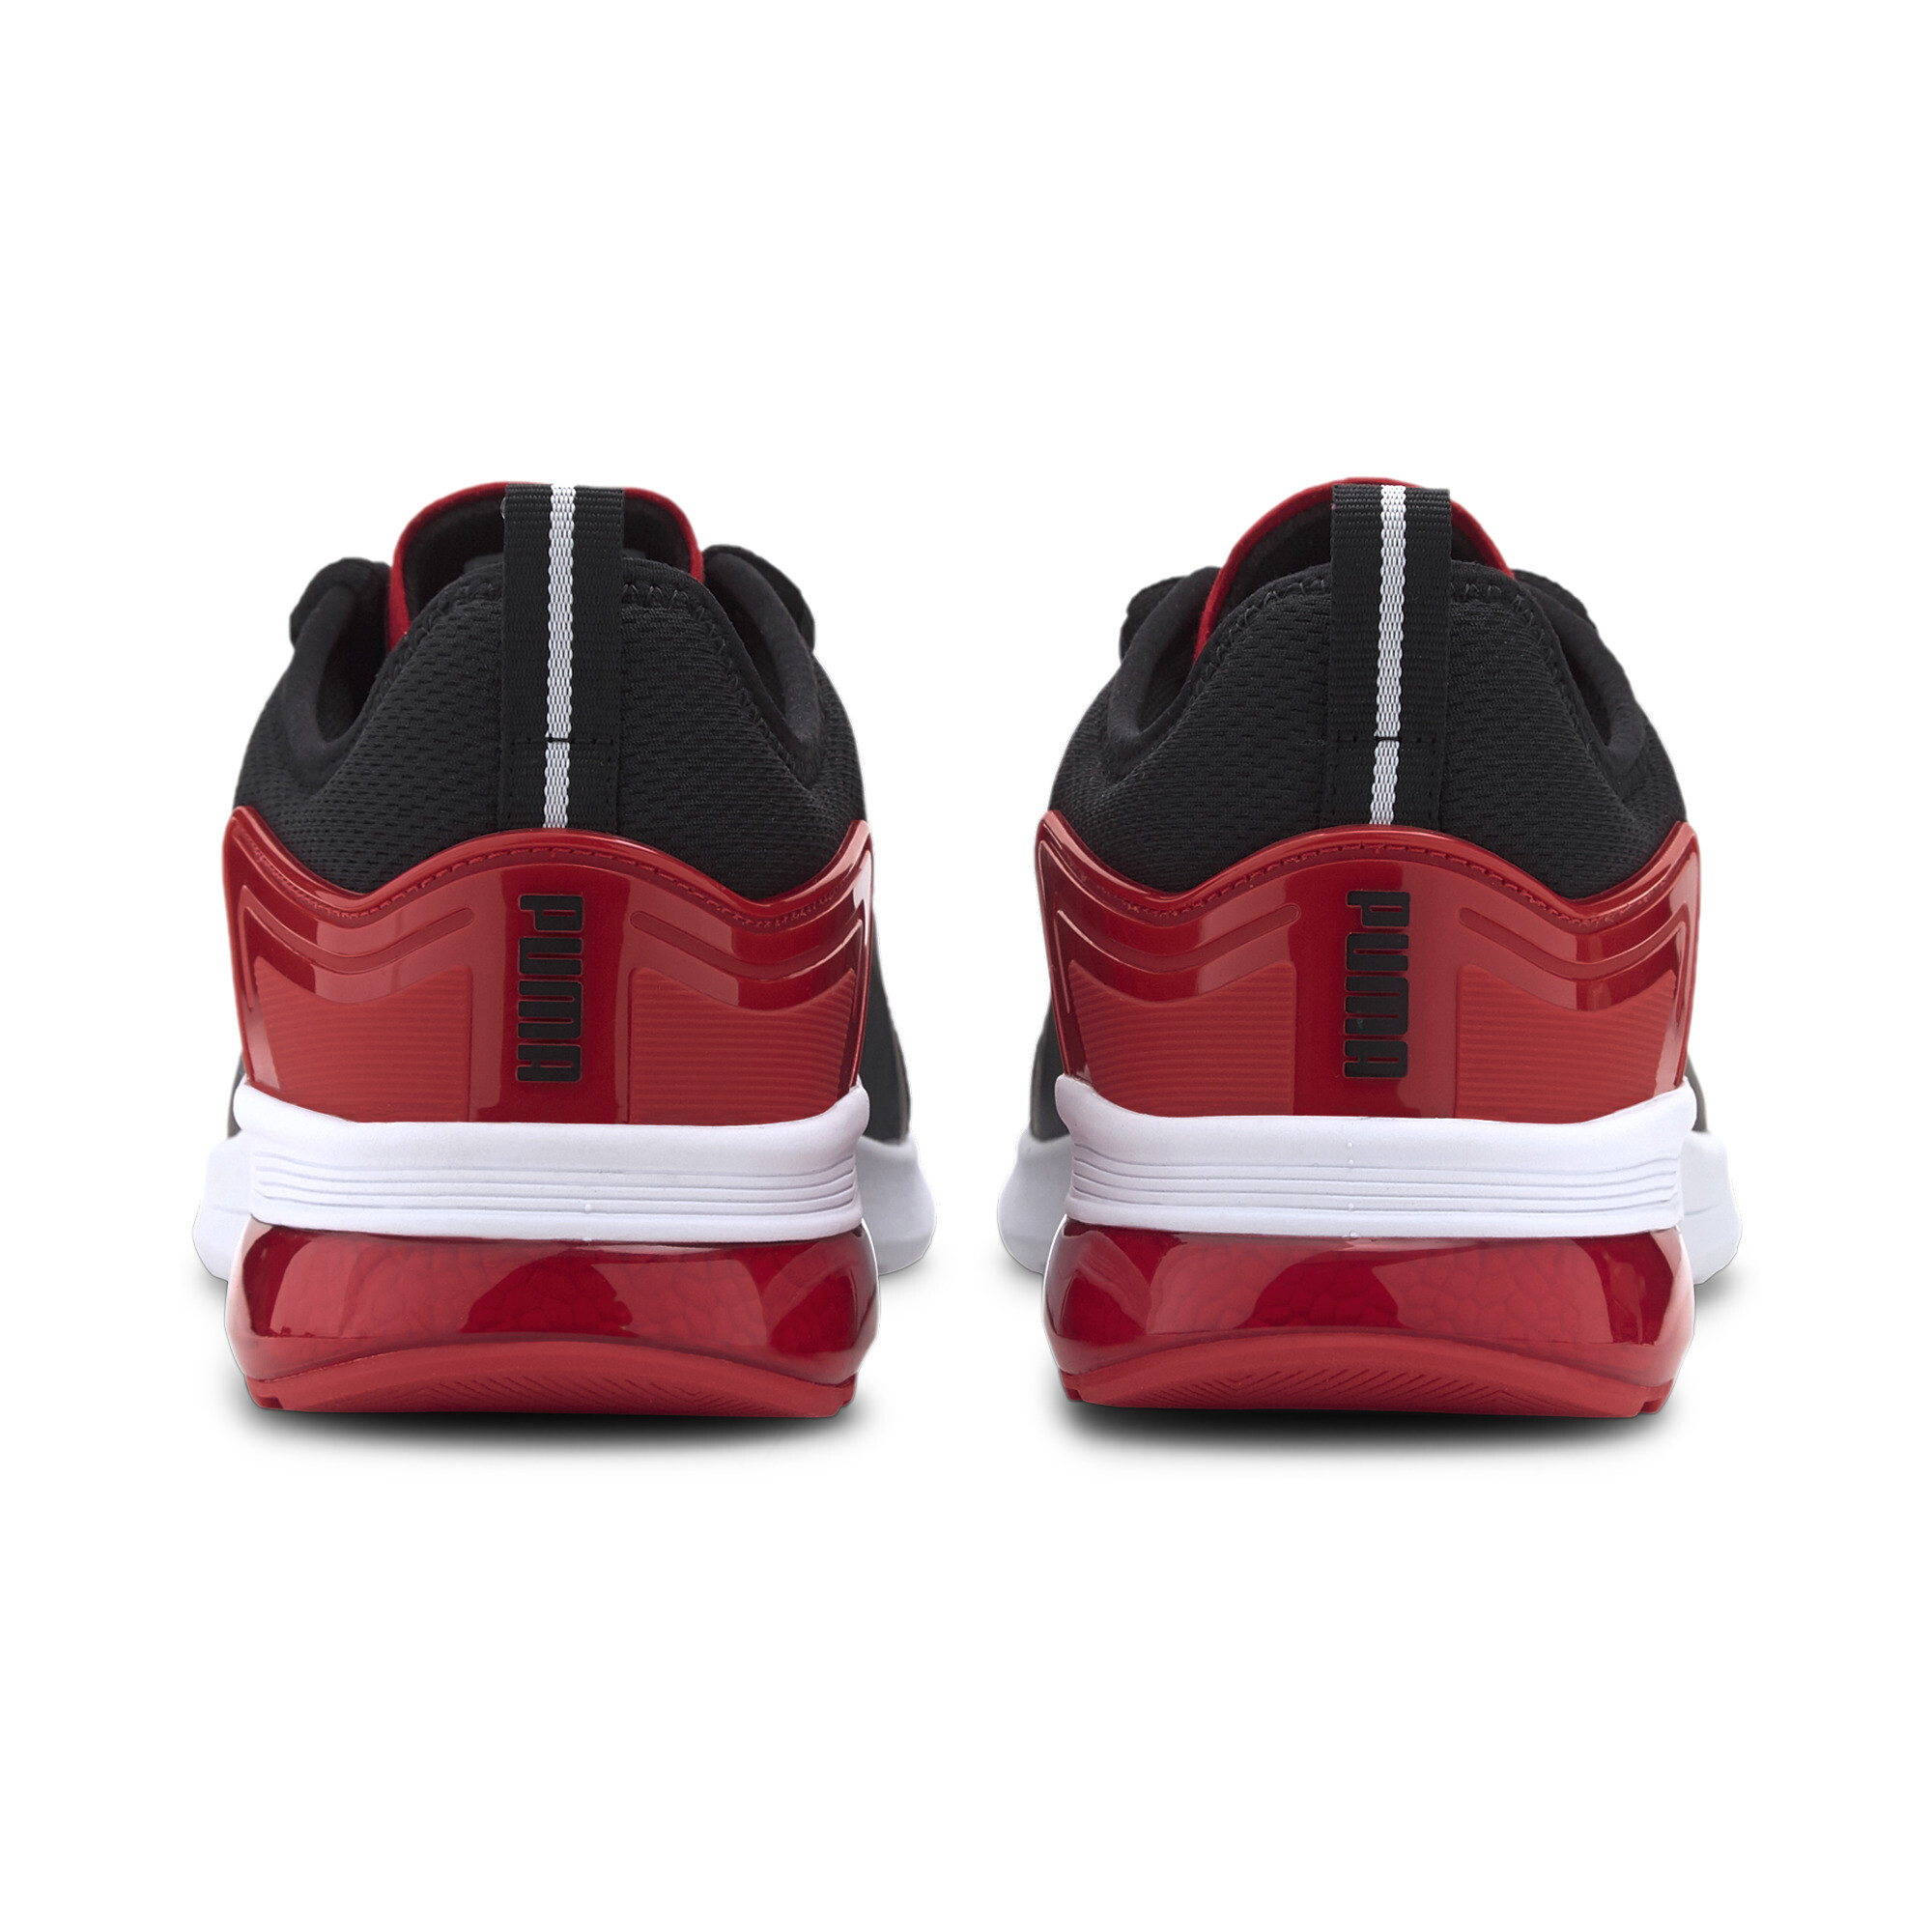 Indexbild 3 - PUMA Electron Street Era Sneaker Unisex Schuhe Basics Neu